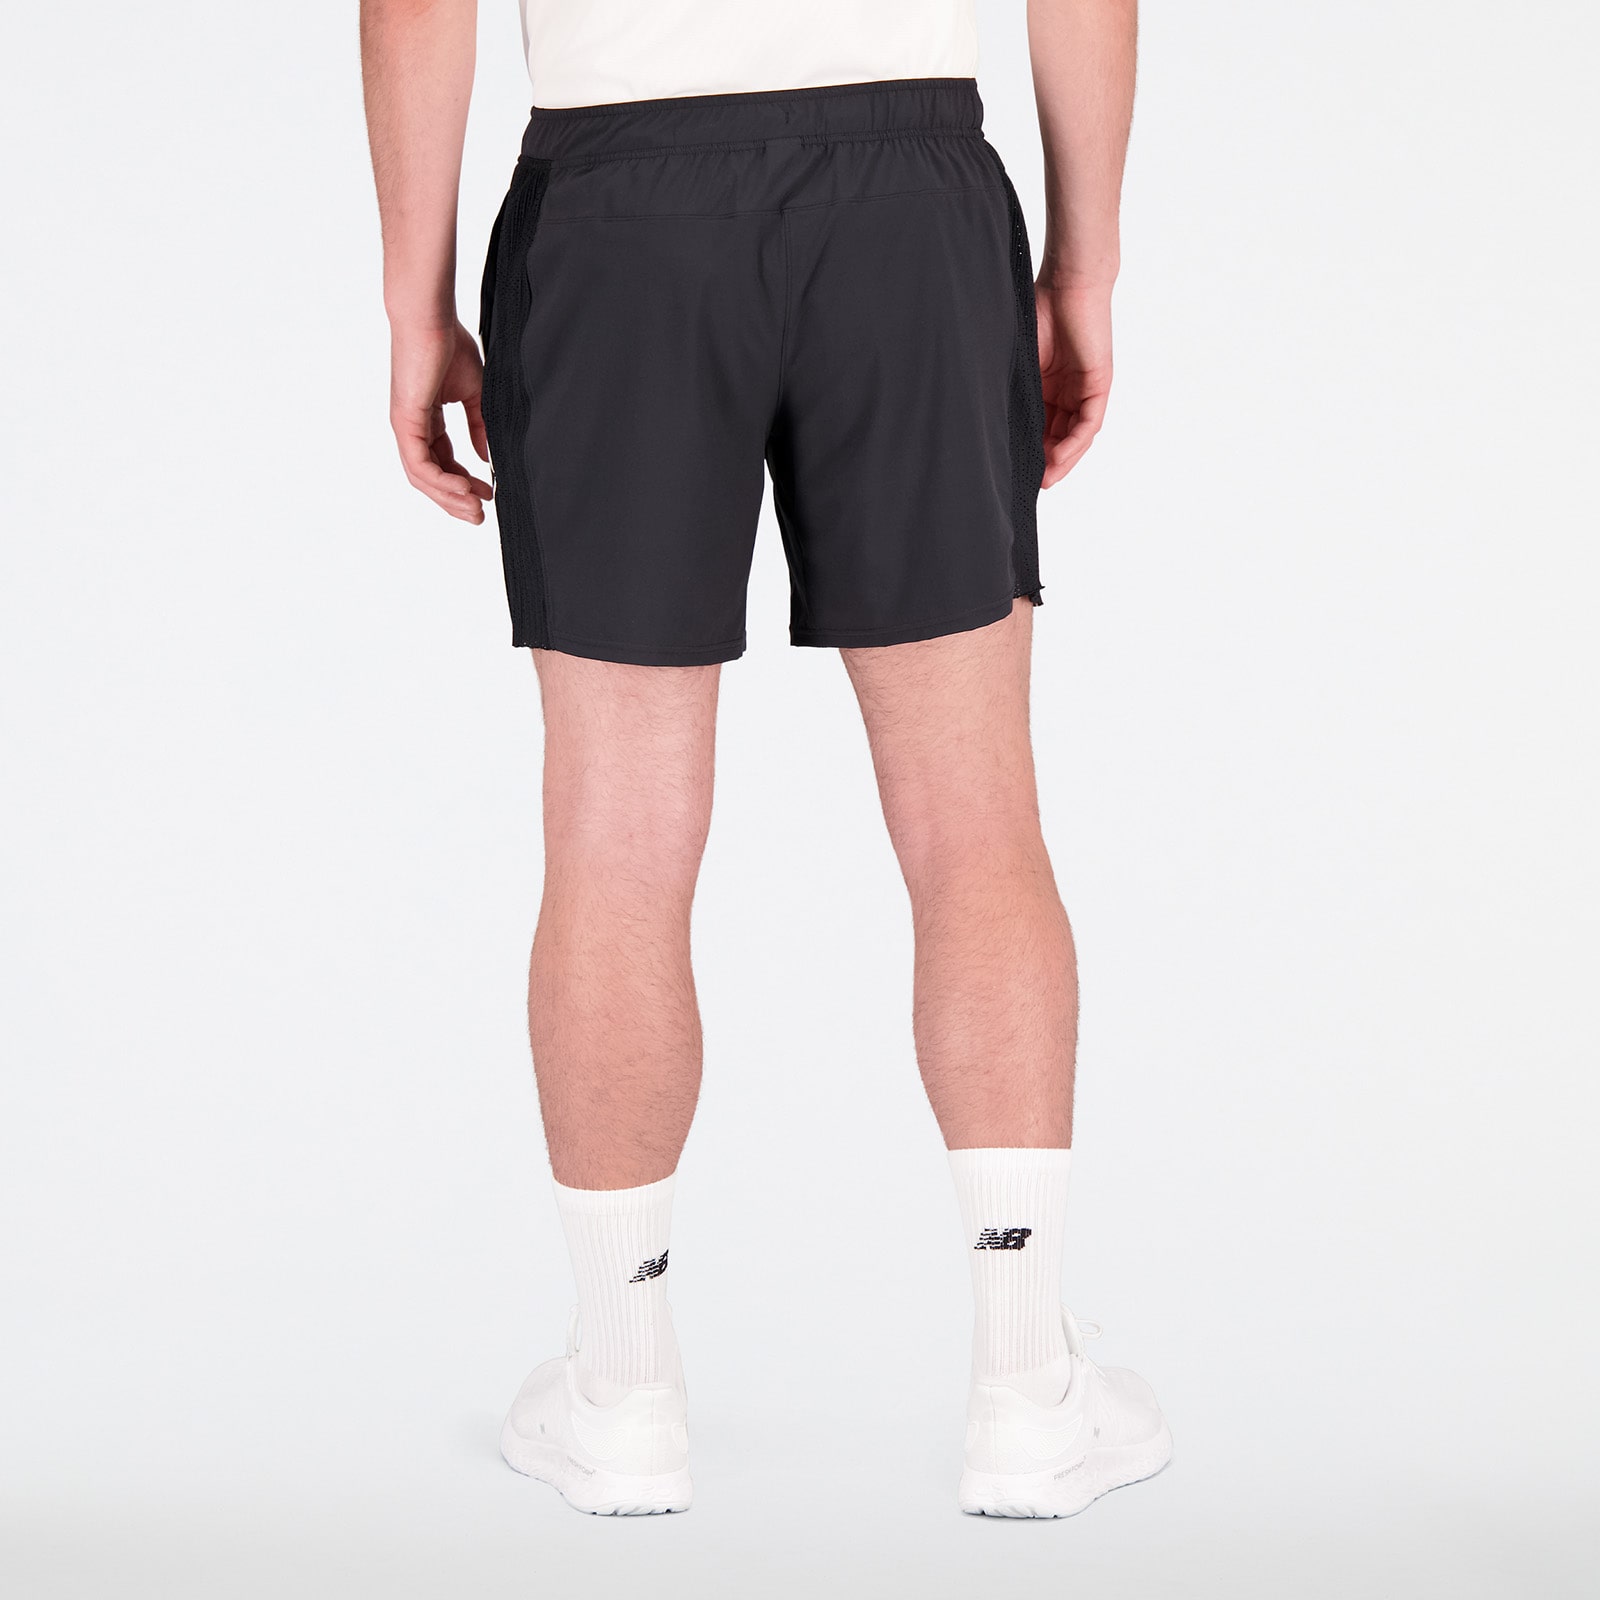 Tournament 7 inch shorts (no underwear)